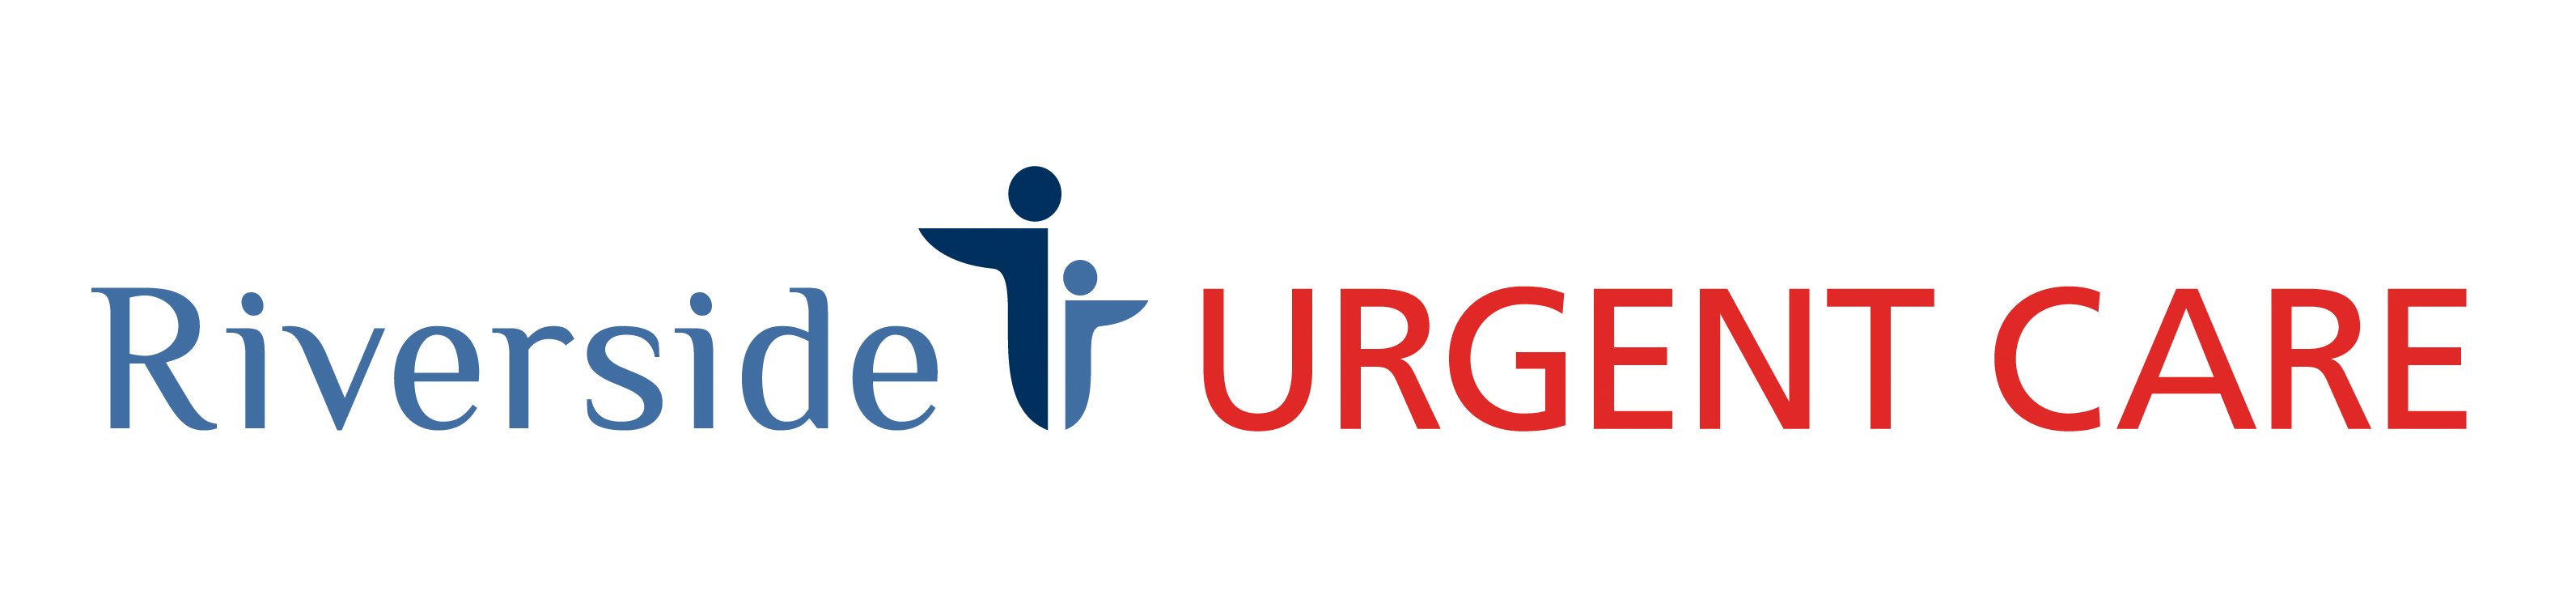 Riverside Urgent Care - Derby Logo